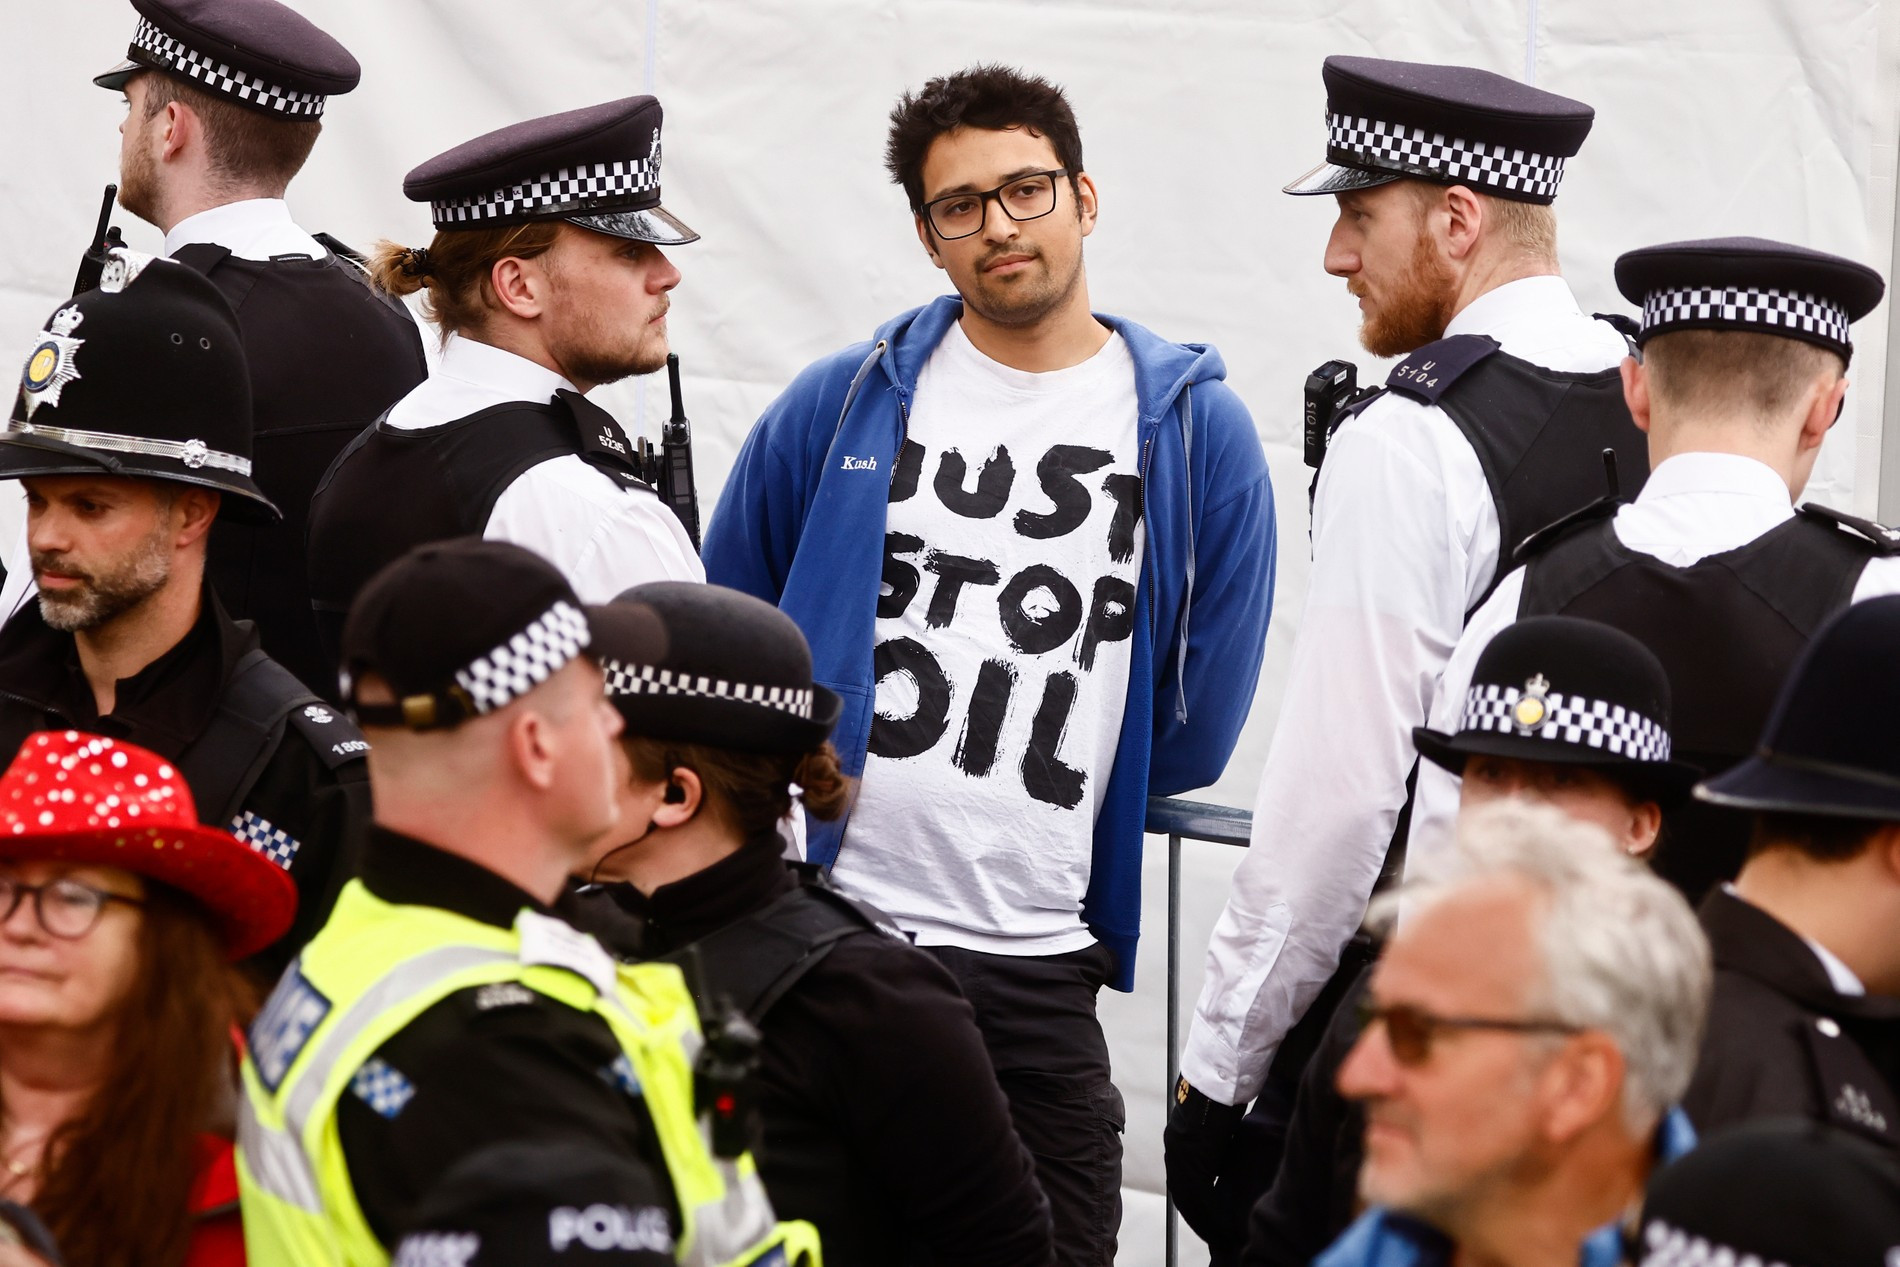 Полицейские задерживают члена движения Just Stop Oil
Фото: Getty Images